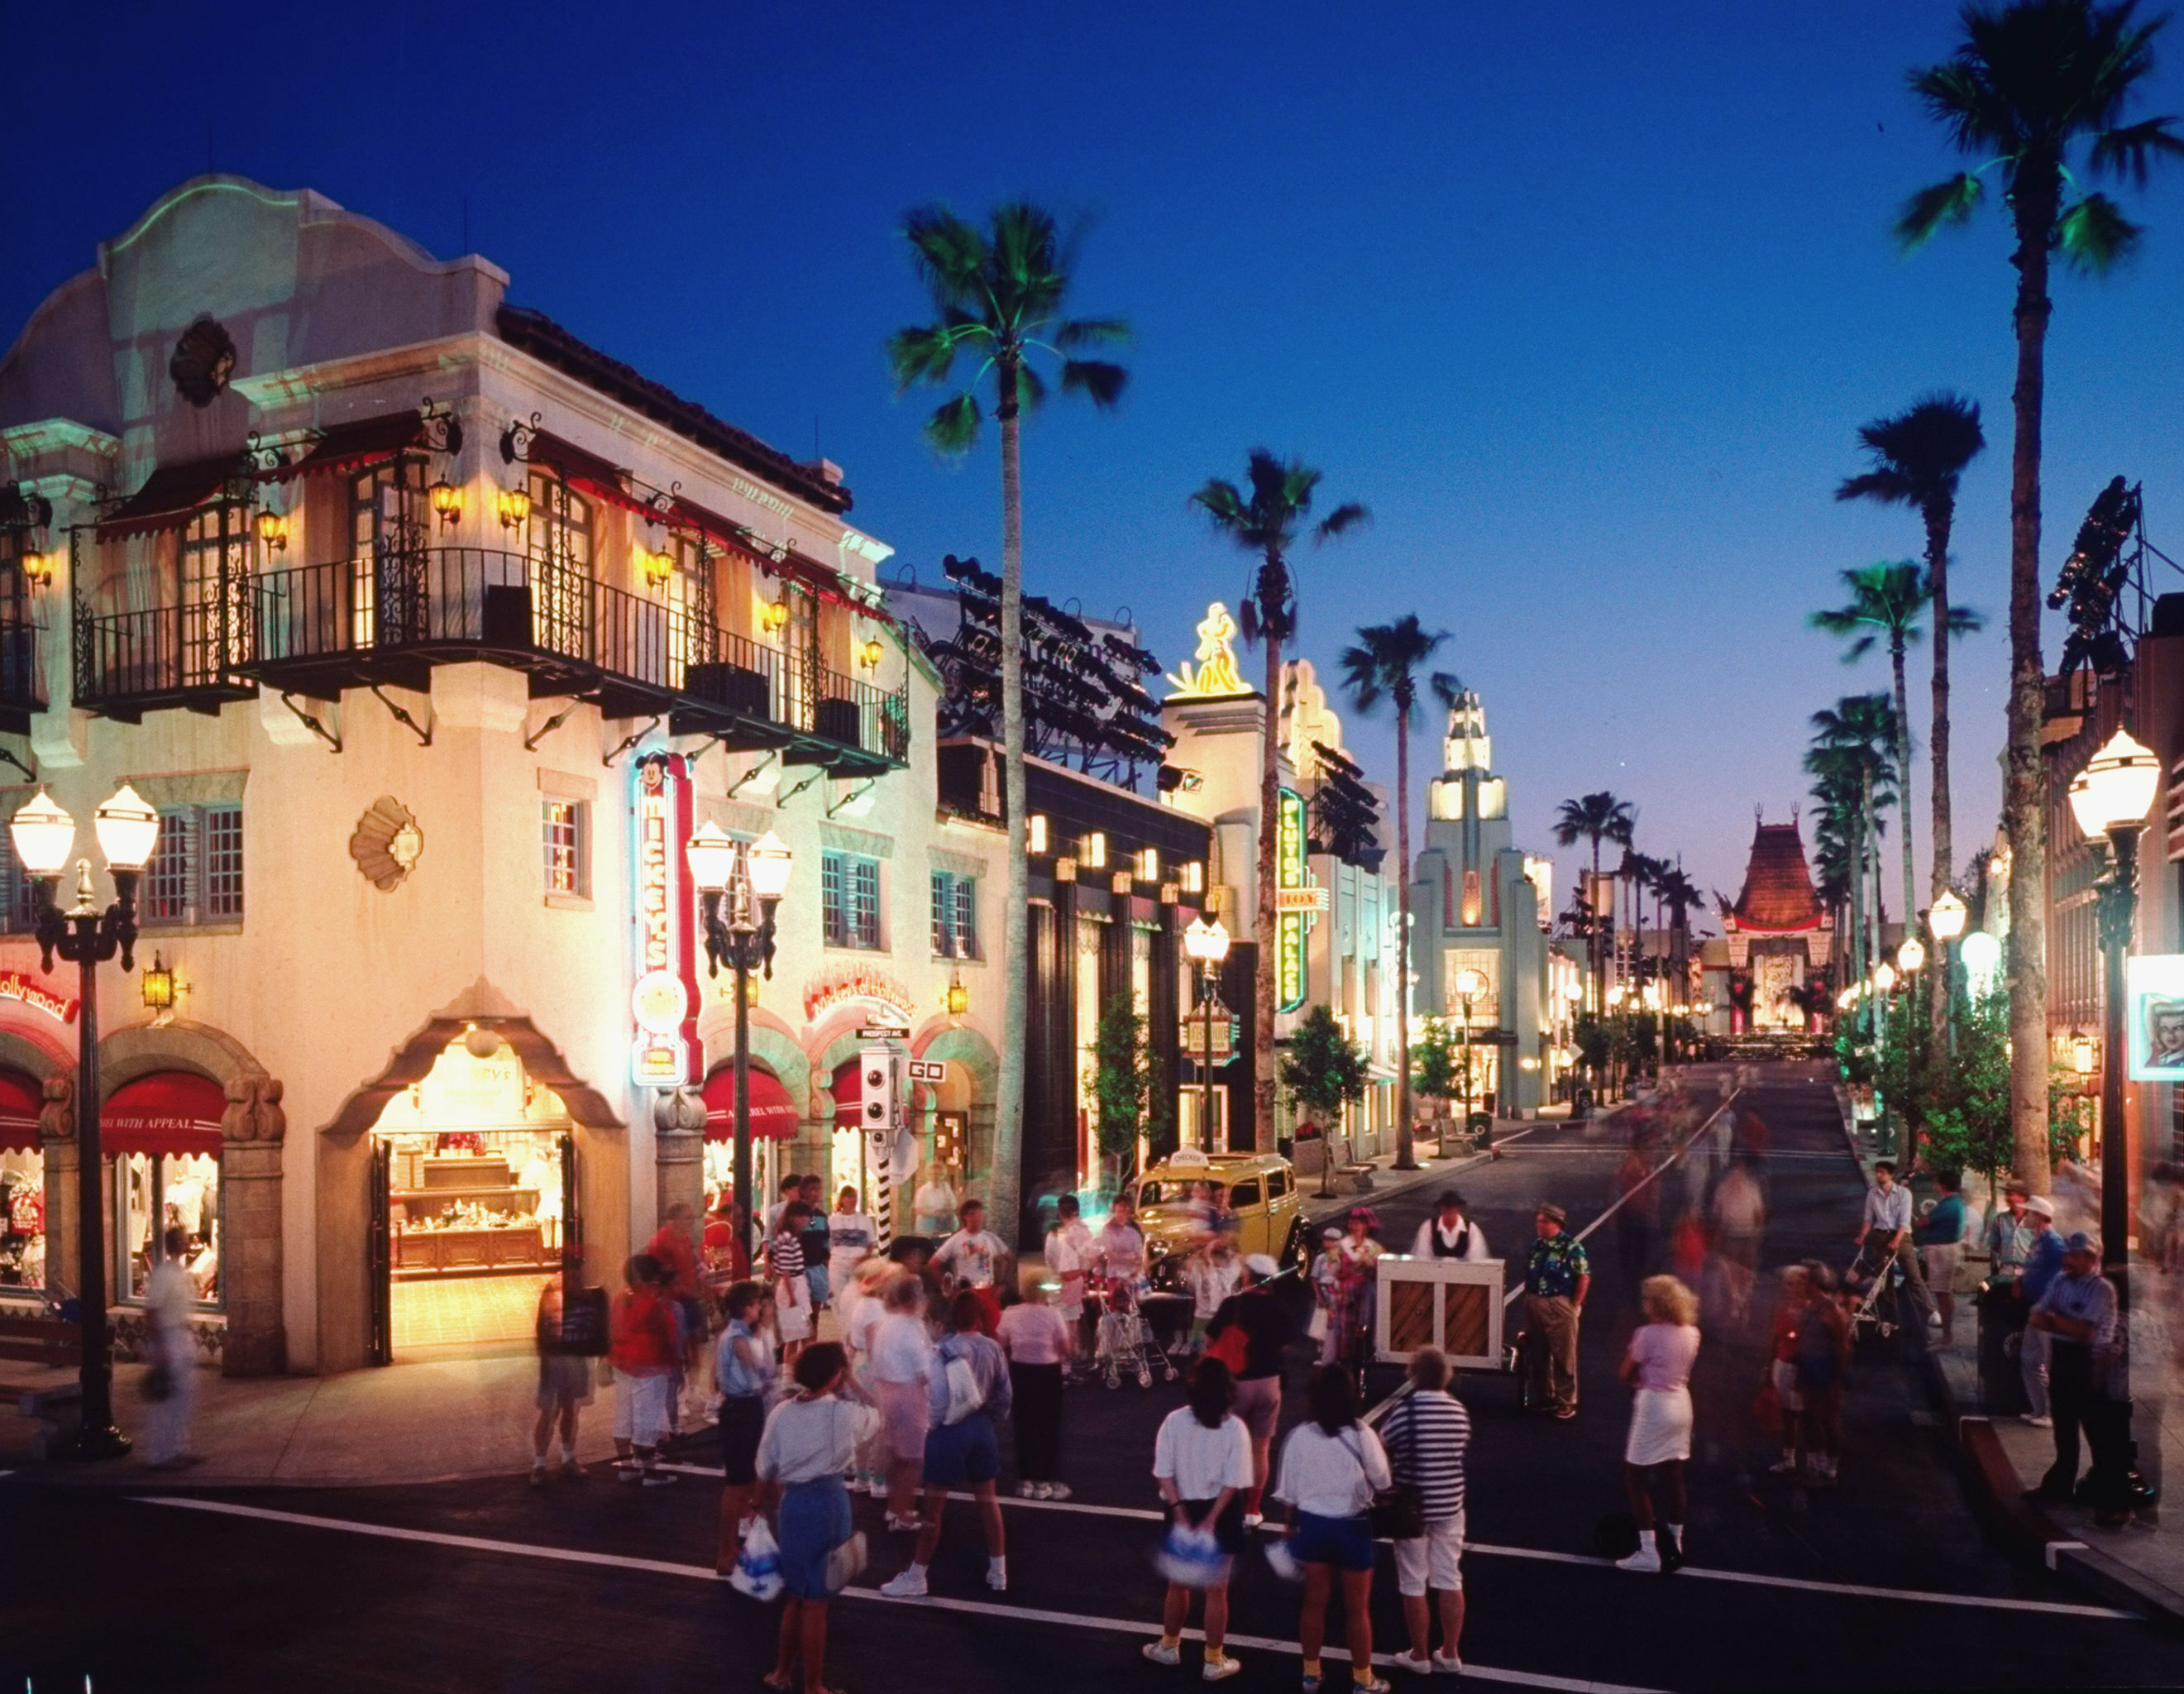 Walt Disney World Hollywood Studios